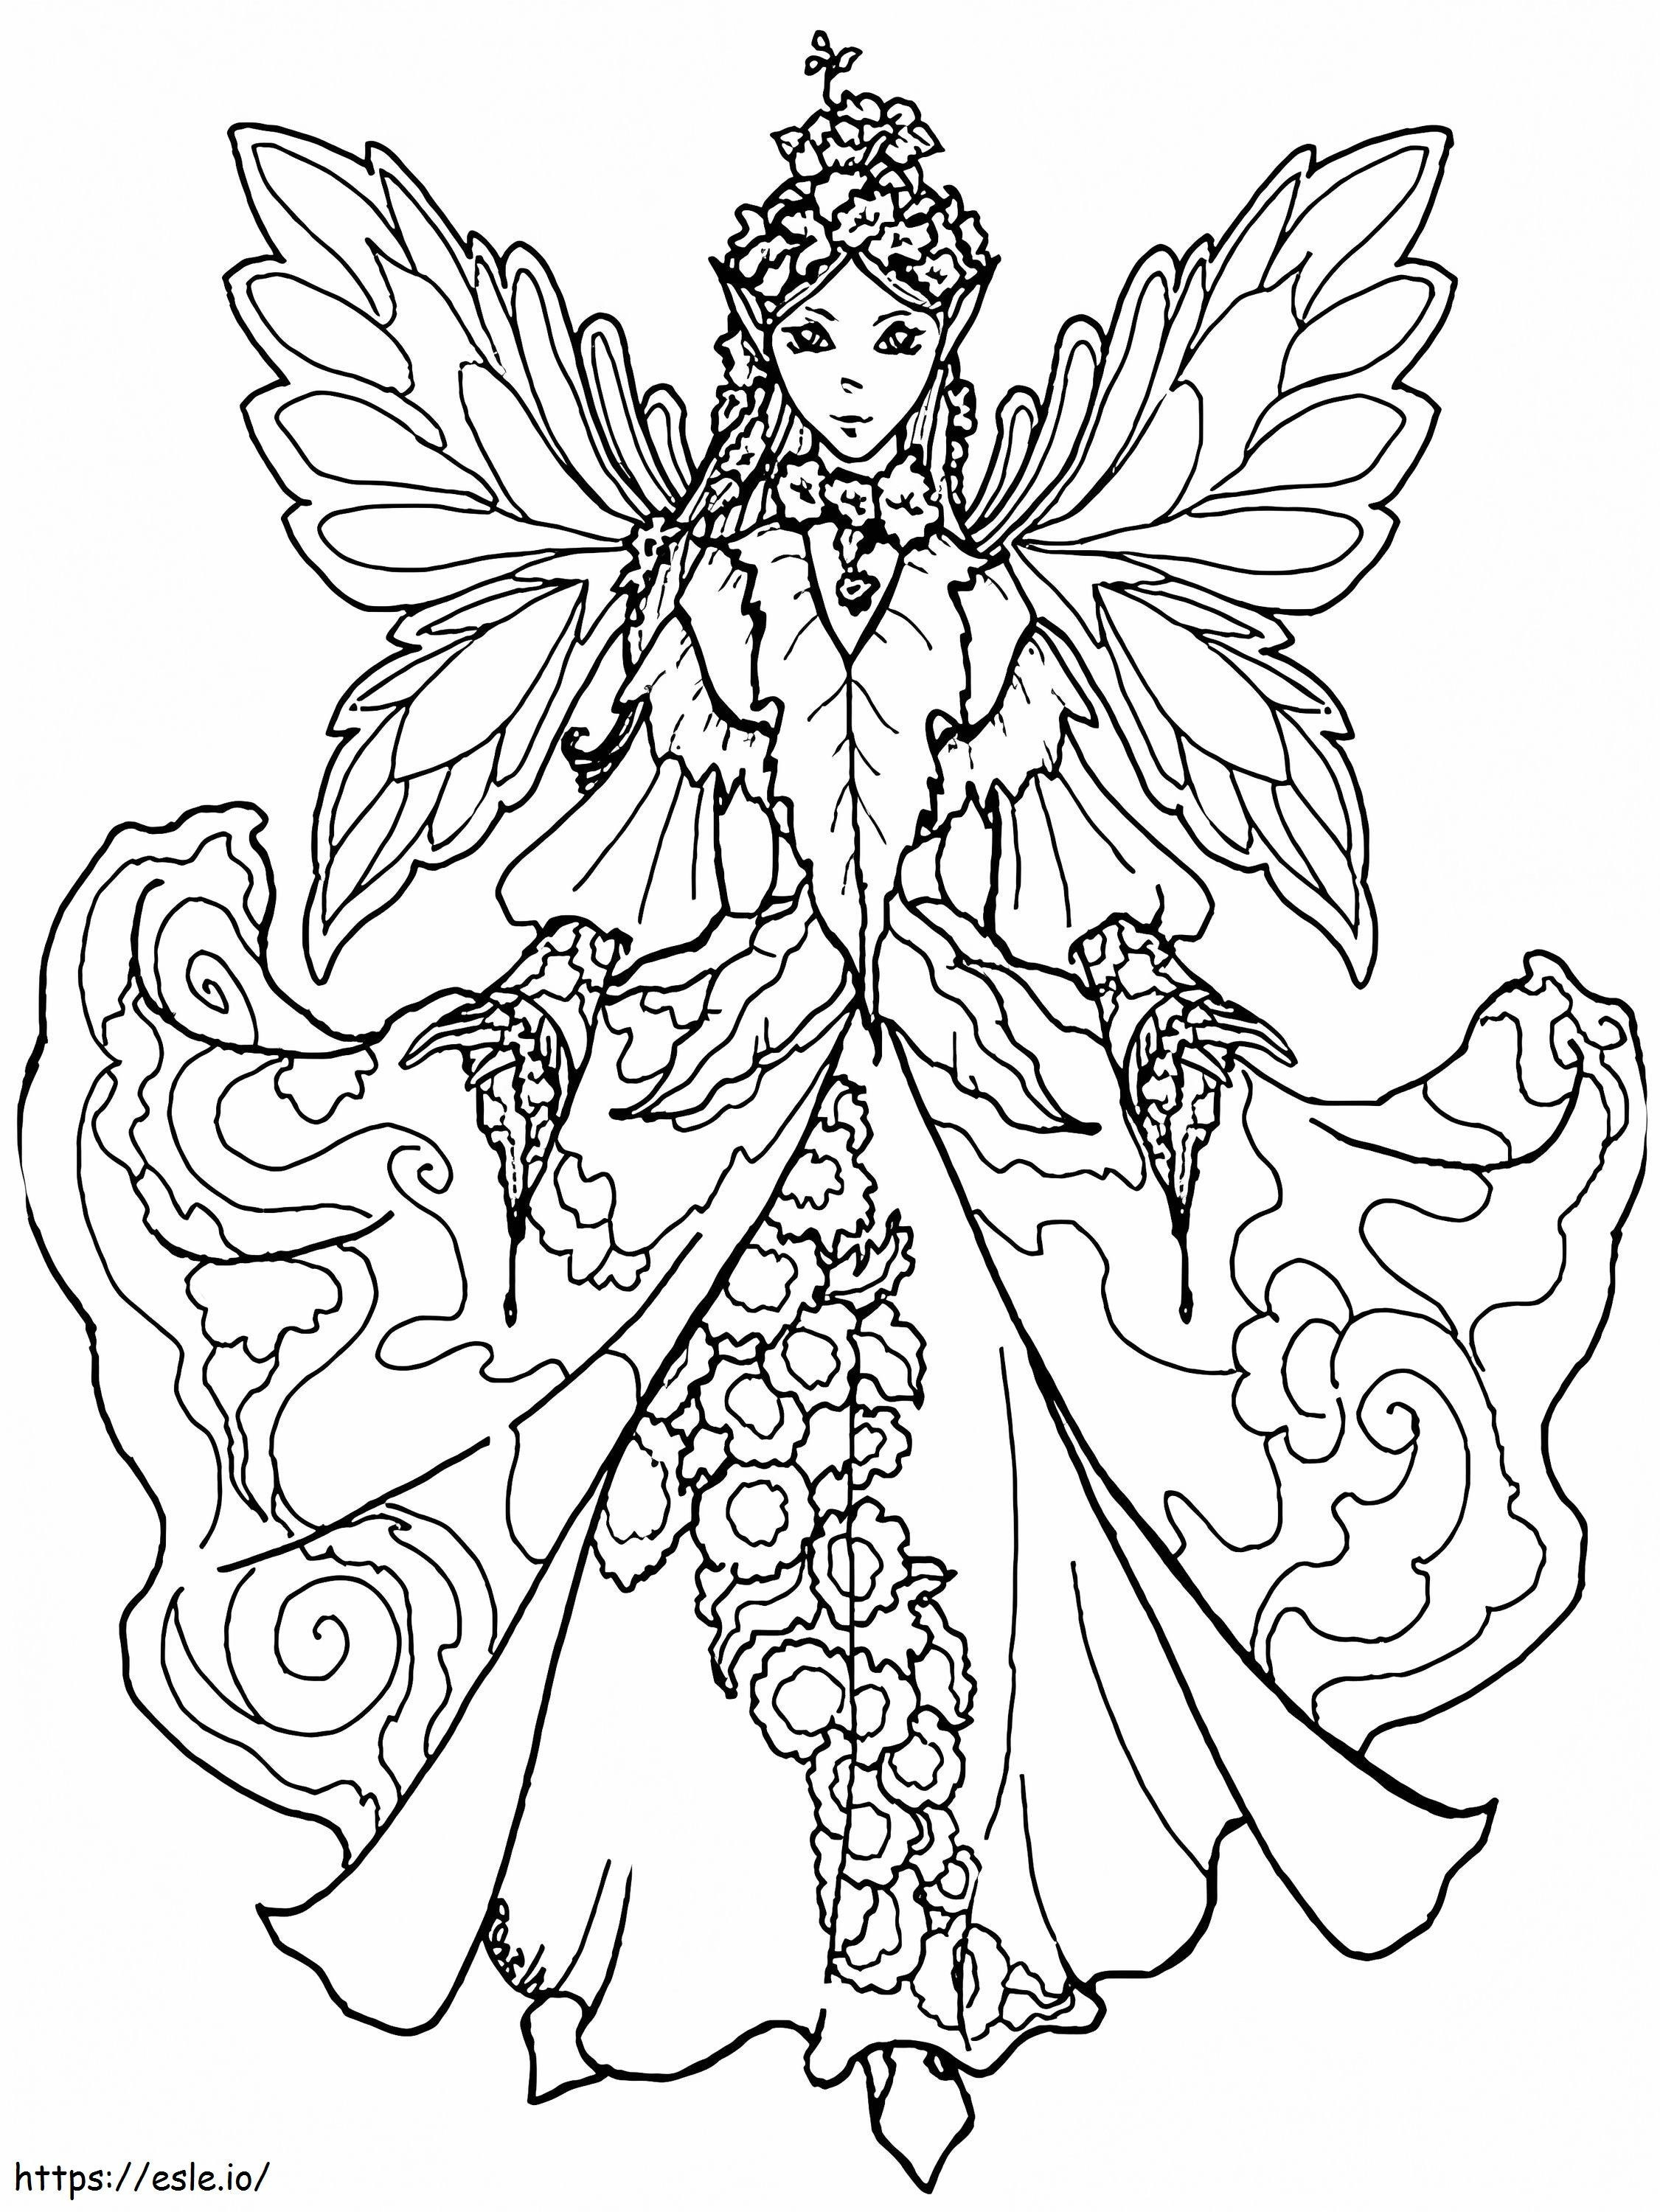 1584067313 大人のための妖精のぬりえ 印象的なドレスの妖精とユニコーン レインボー マジック ユニコーン マーメイド レオナに乗って ぬりえ - 塗り絵